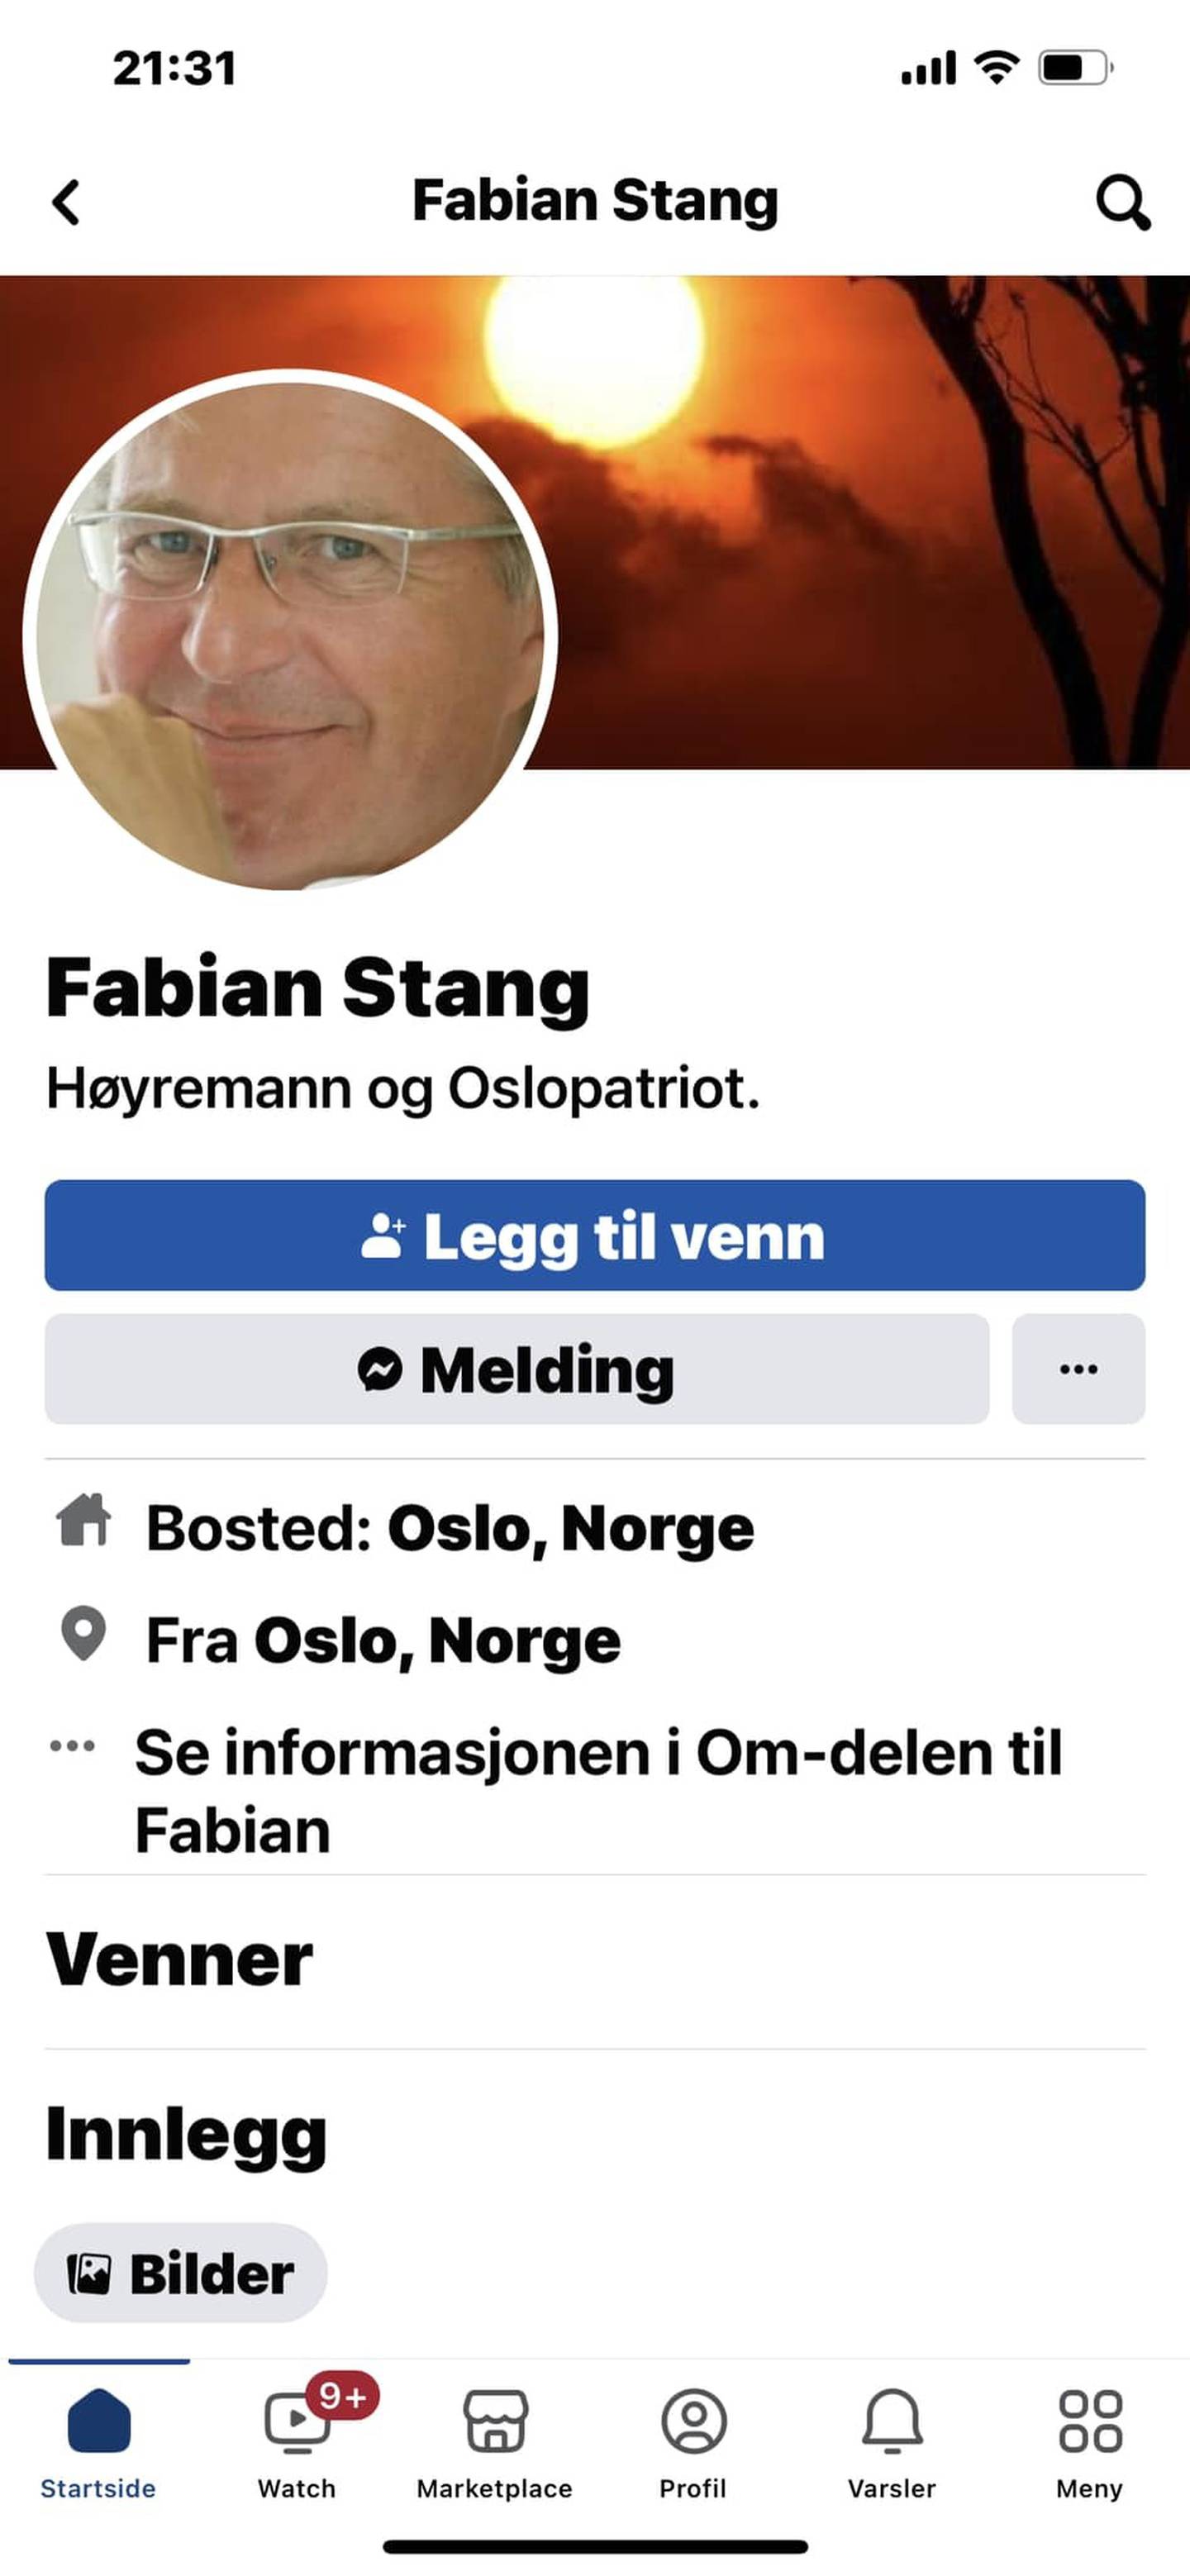 Tidligere Oslo-ordfører Fabian Stang varslet om denne falske Facebook-profilen, og la ut skjermbildet på sin ekte Facebook-side